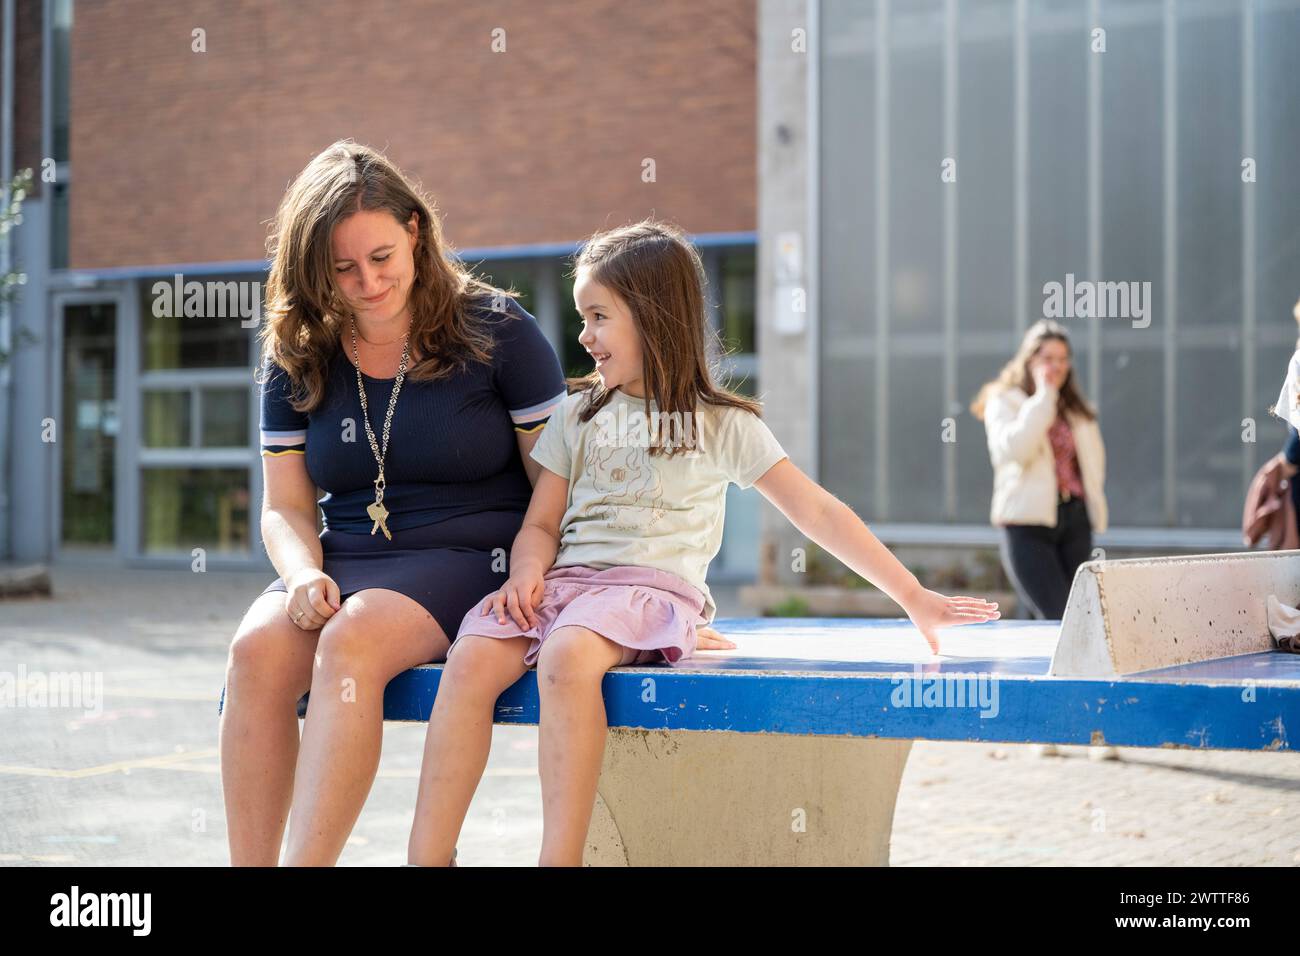 Una conversazione allegra tra una giovane ragazza e una donna seduta fuori in una giornata di sole. Foto Stock